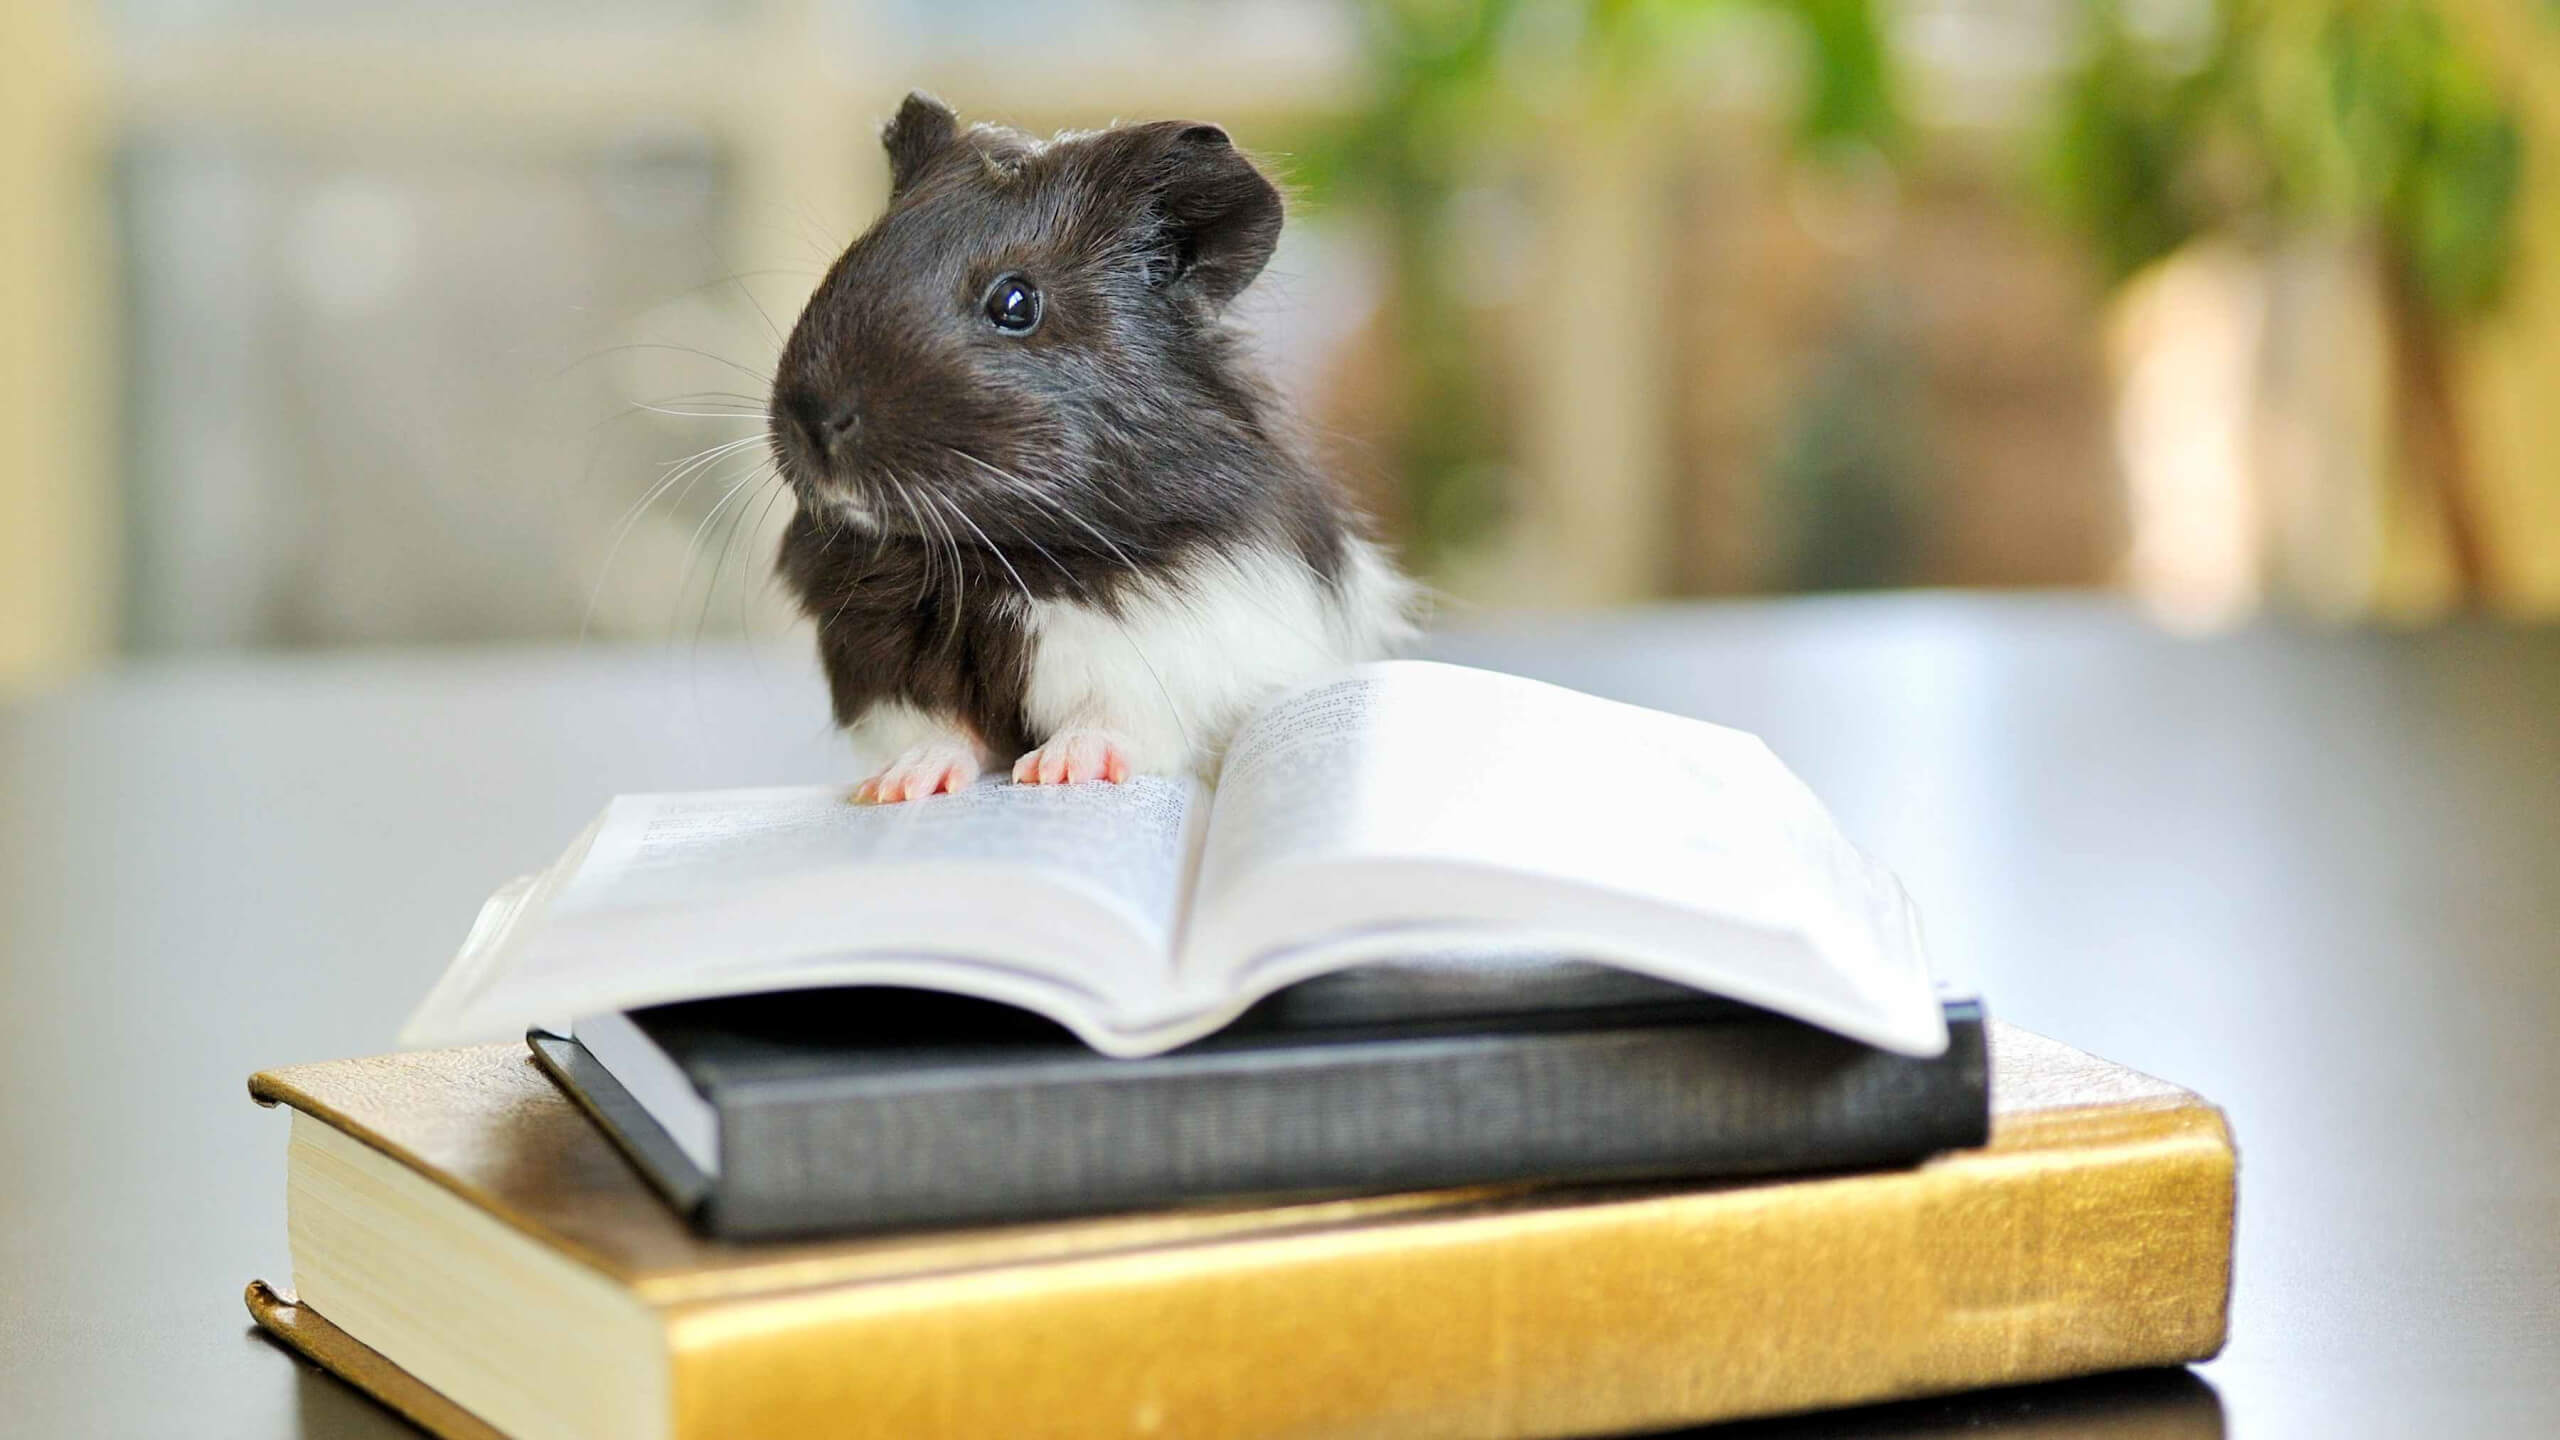 Haustiere – Wer lesen kann, ist klar im Vorteil. Haustiere bleiben in der EU erlaubt